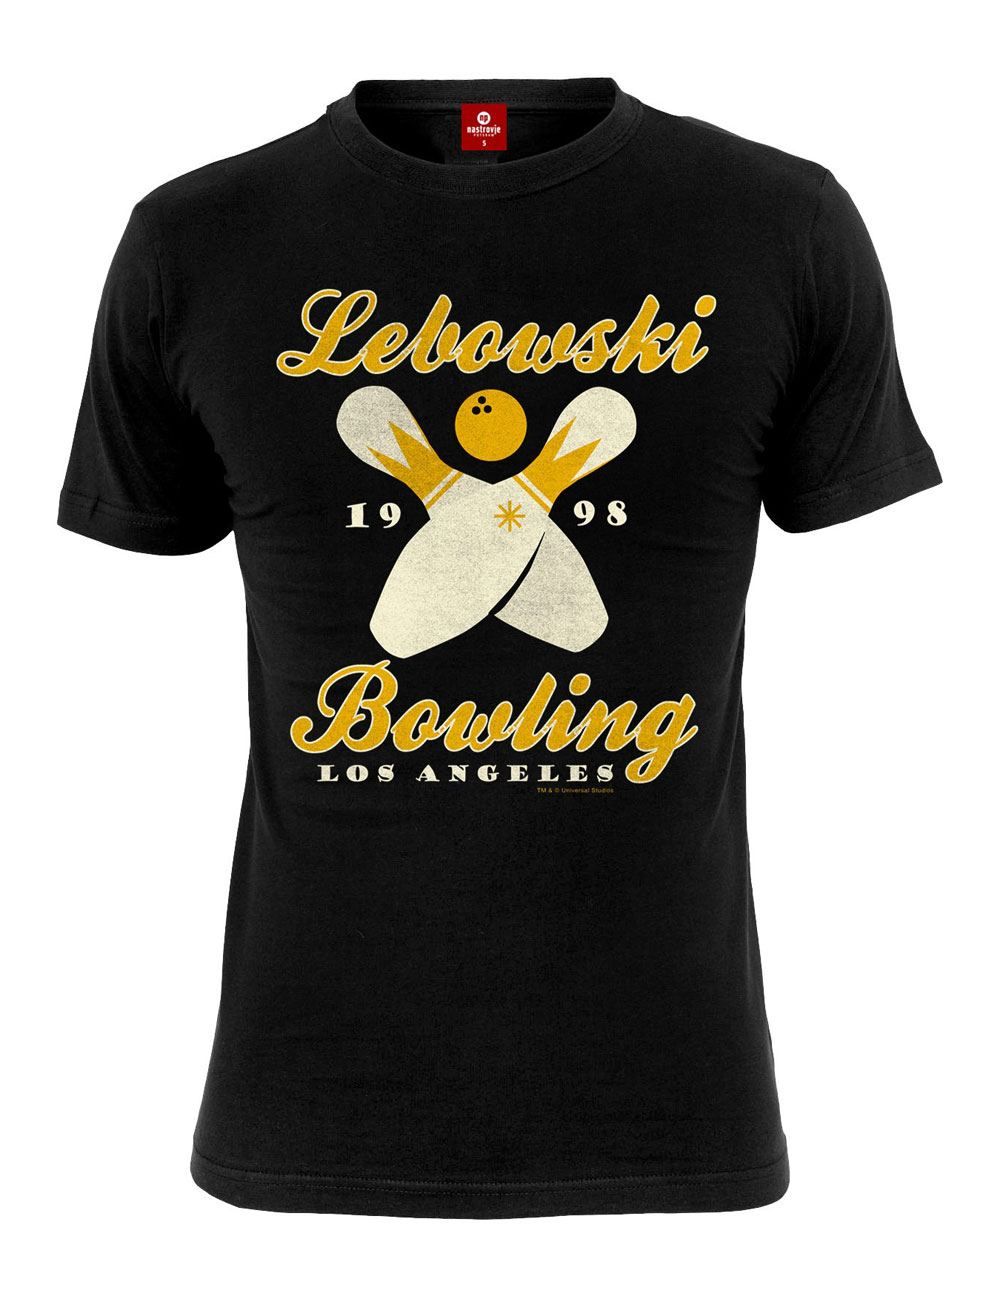 The Big Lebowski T-Shirt Bowling LA Size XL Nastrovje Potsdam